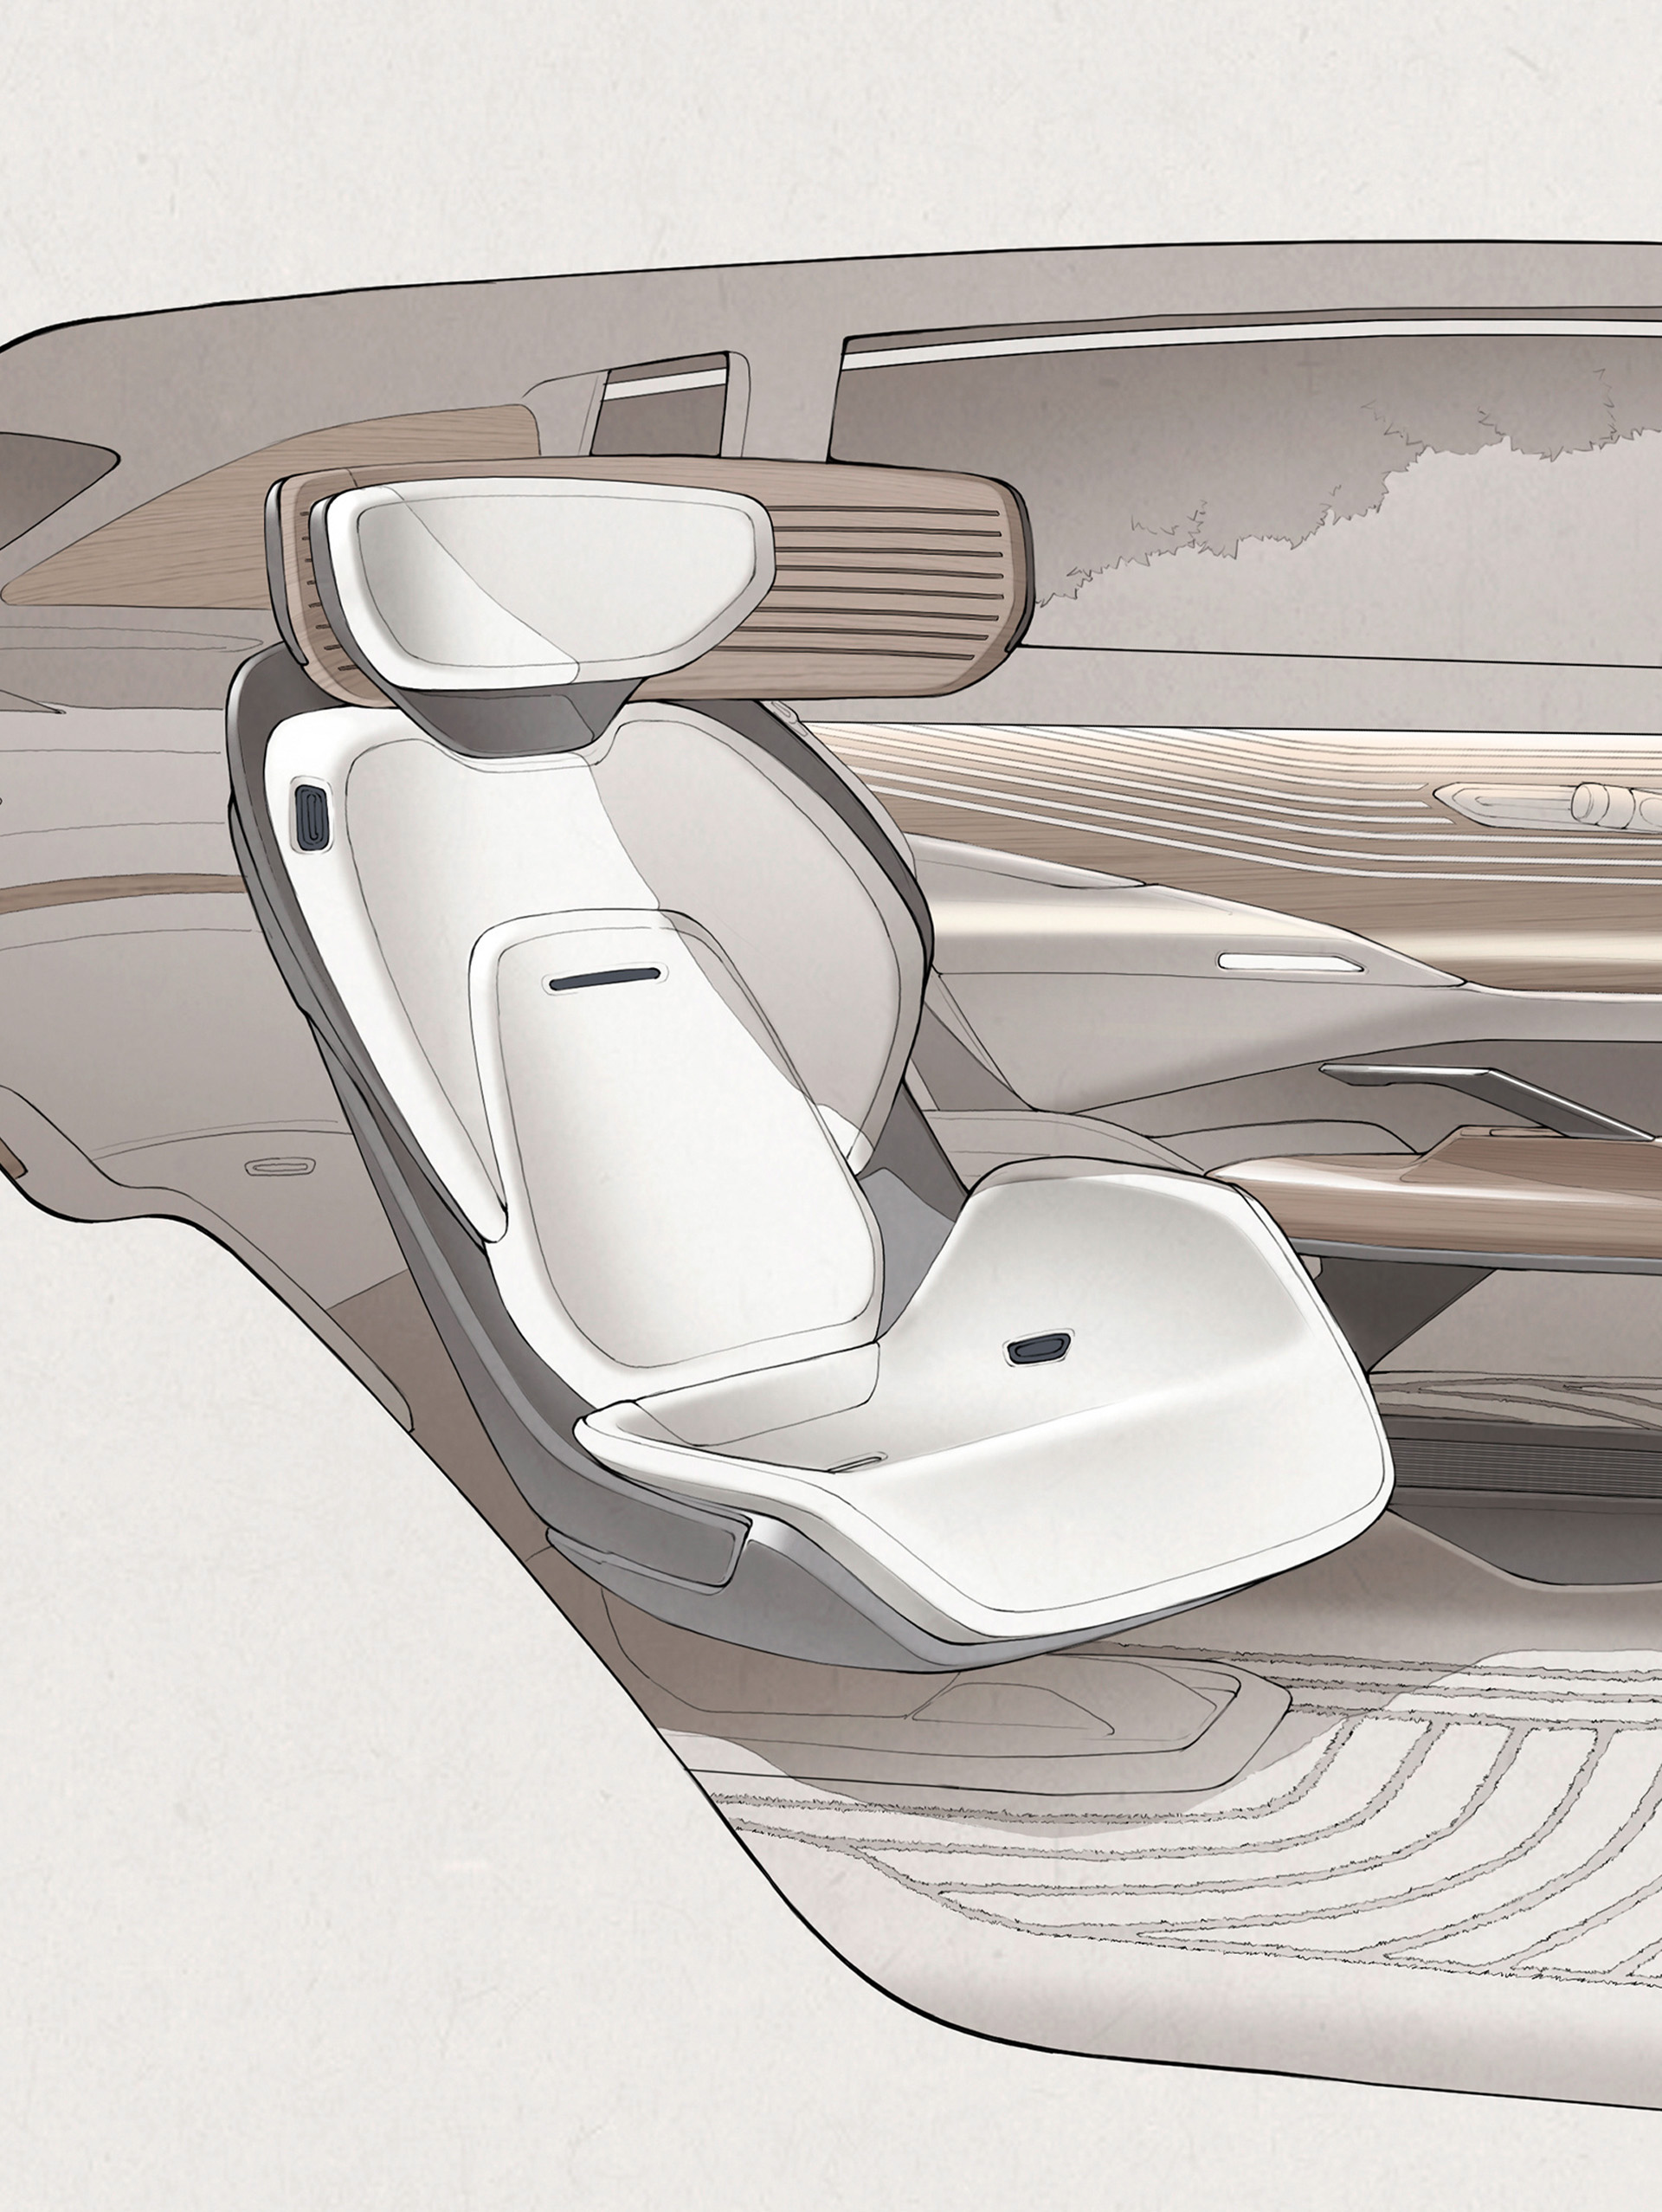 Een schets van een autostoel in de Audi urbansphere concept.